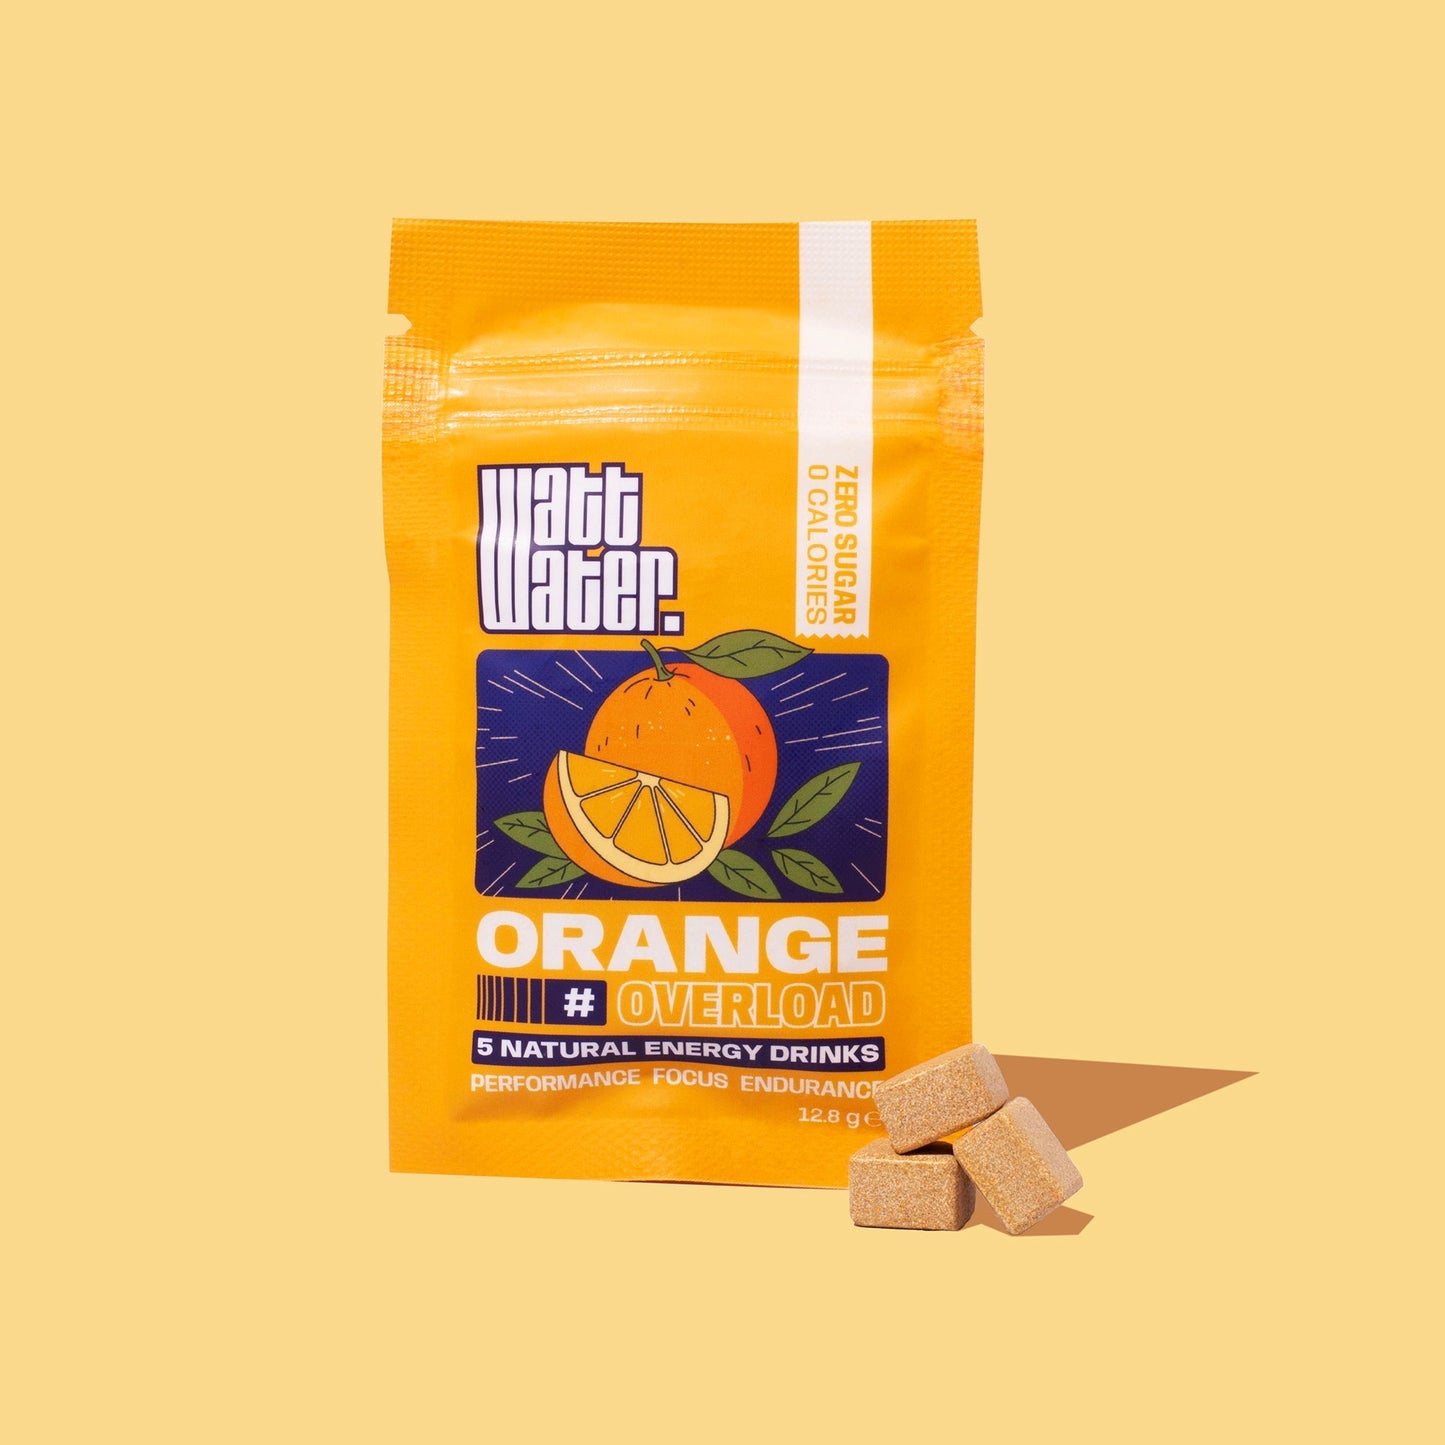 Orange overload pack